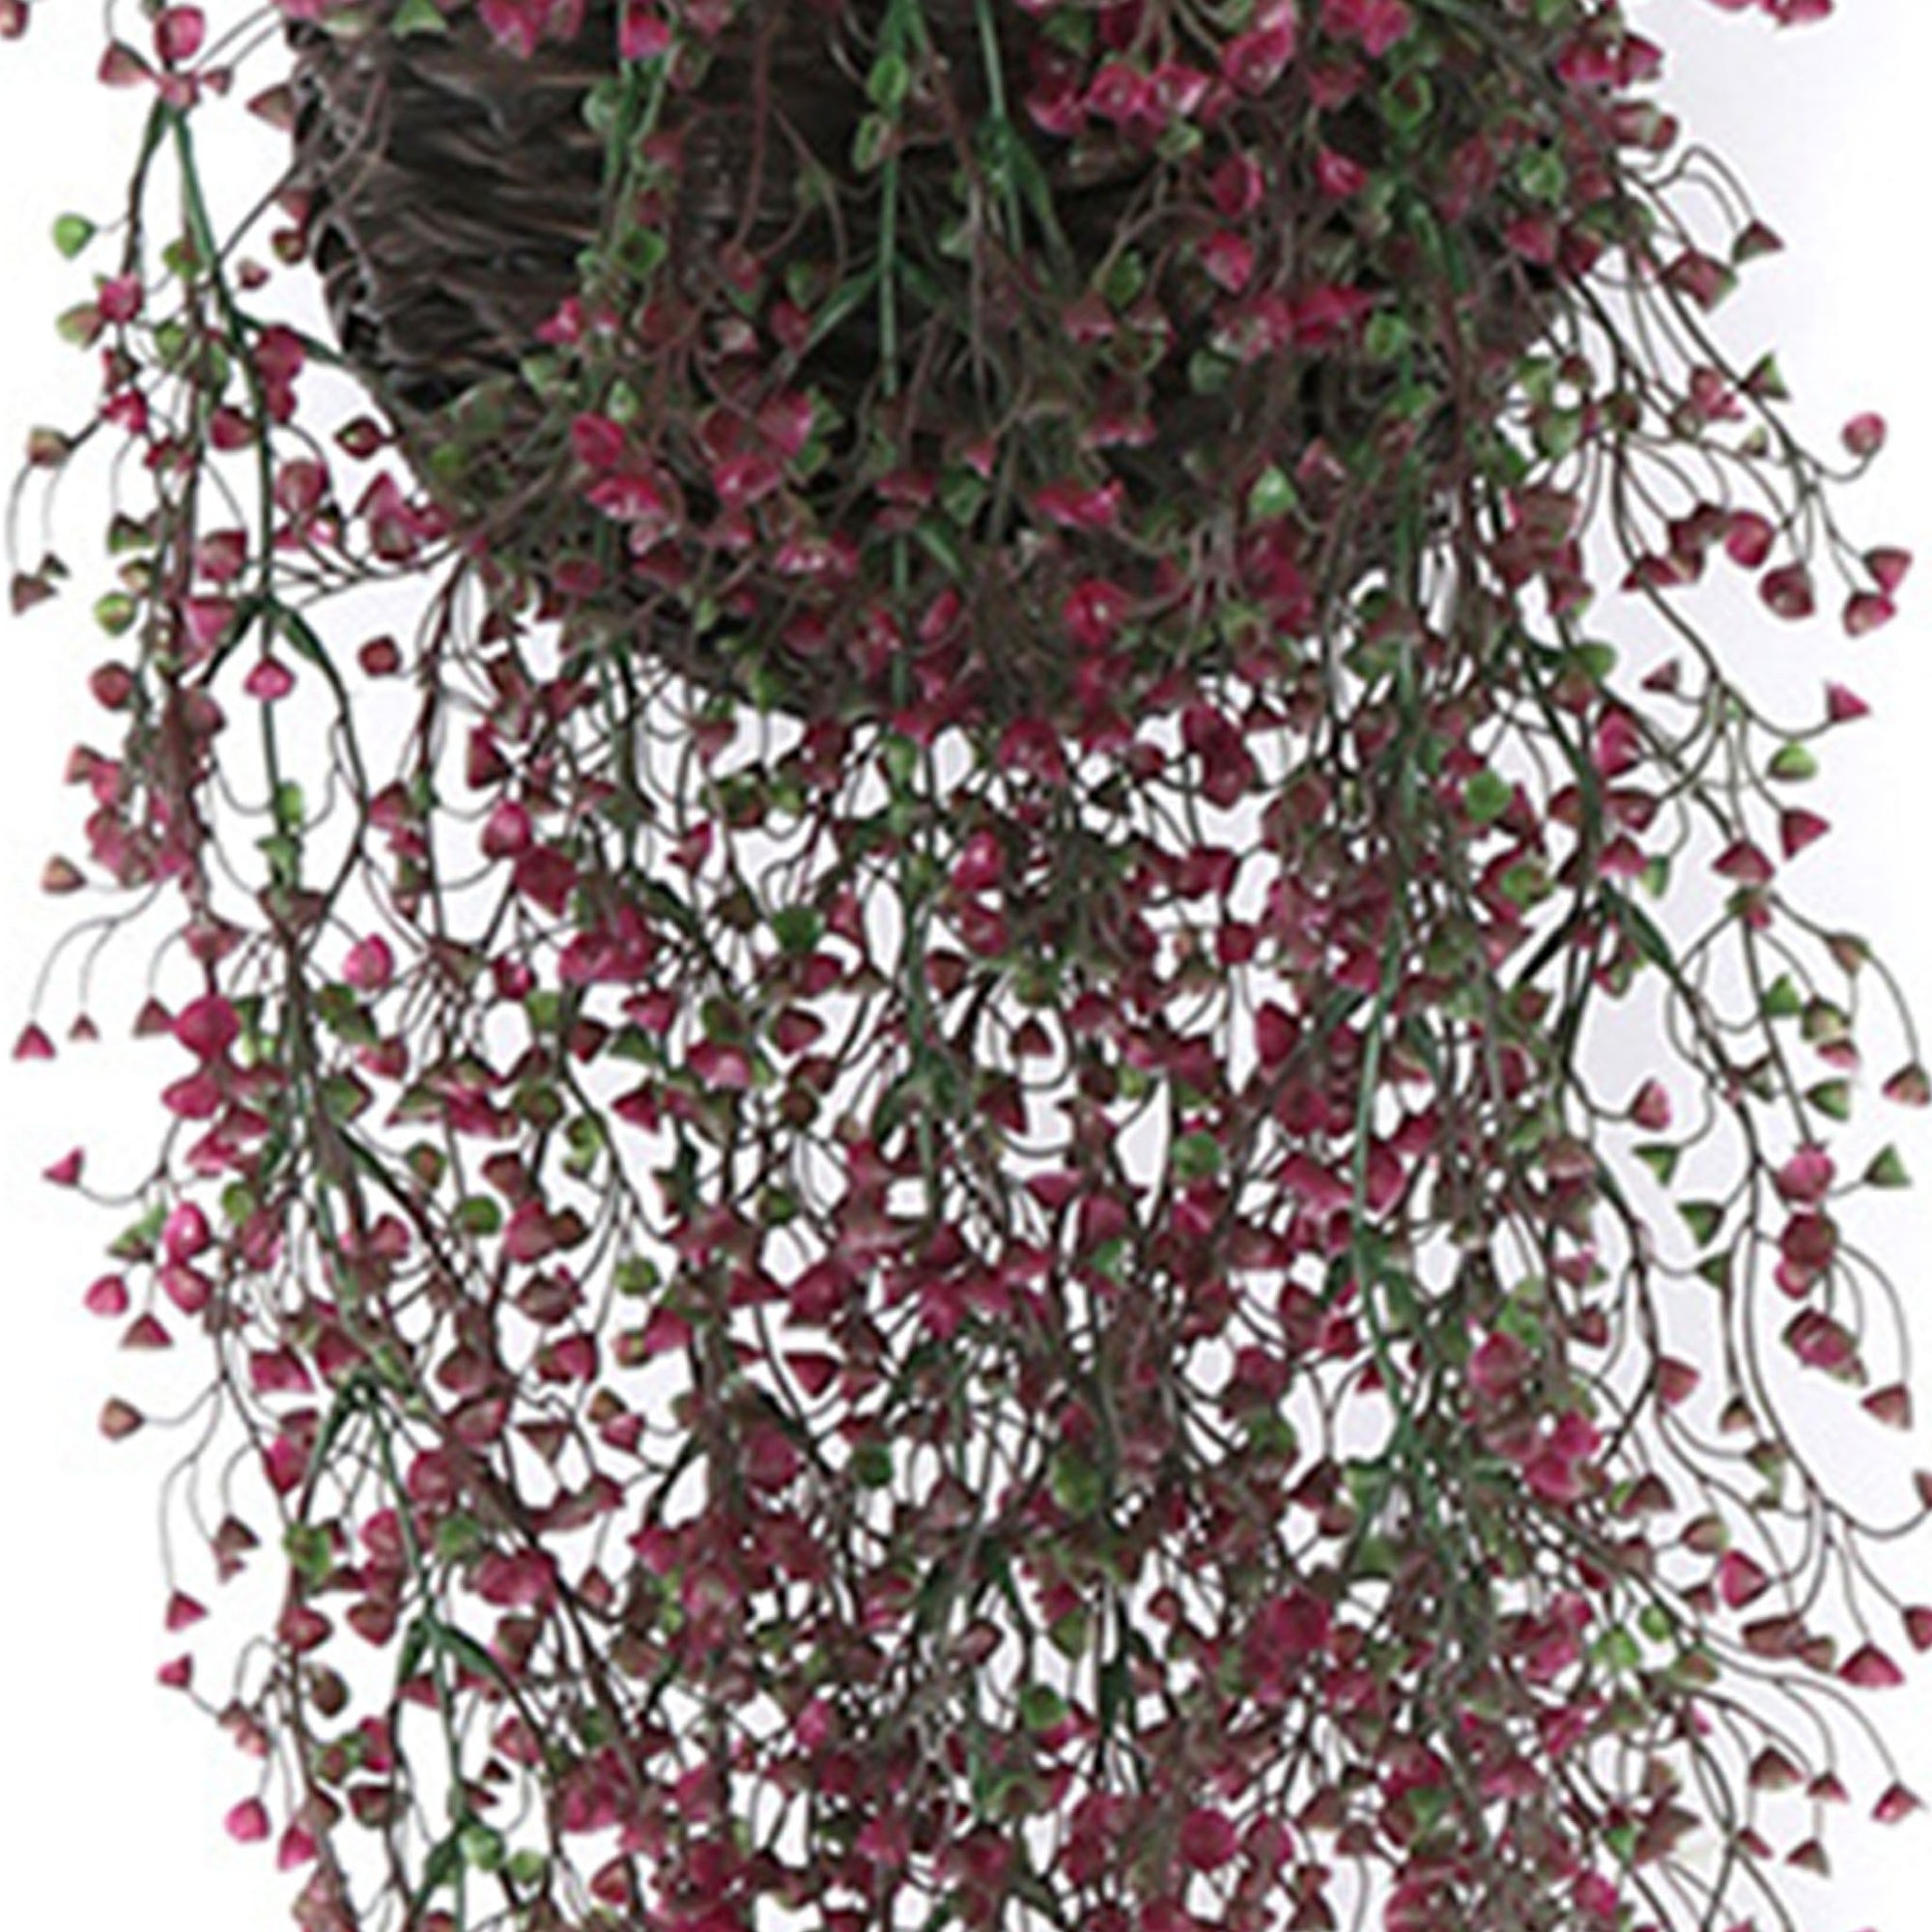 Fake Hanging Plants for Basket Vine Plastic Plants